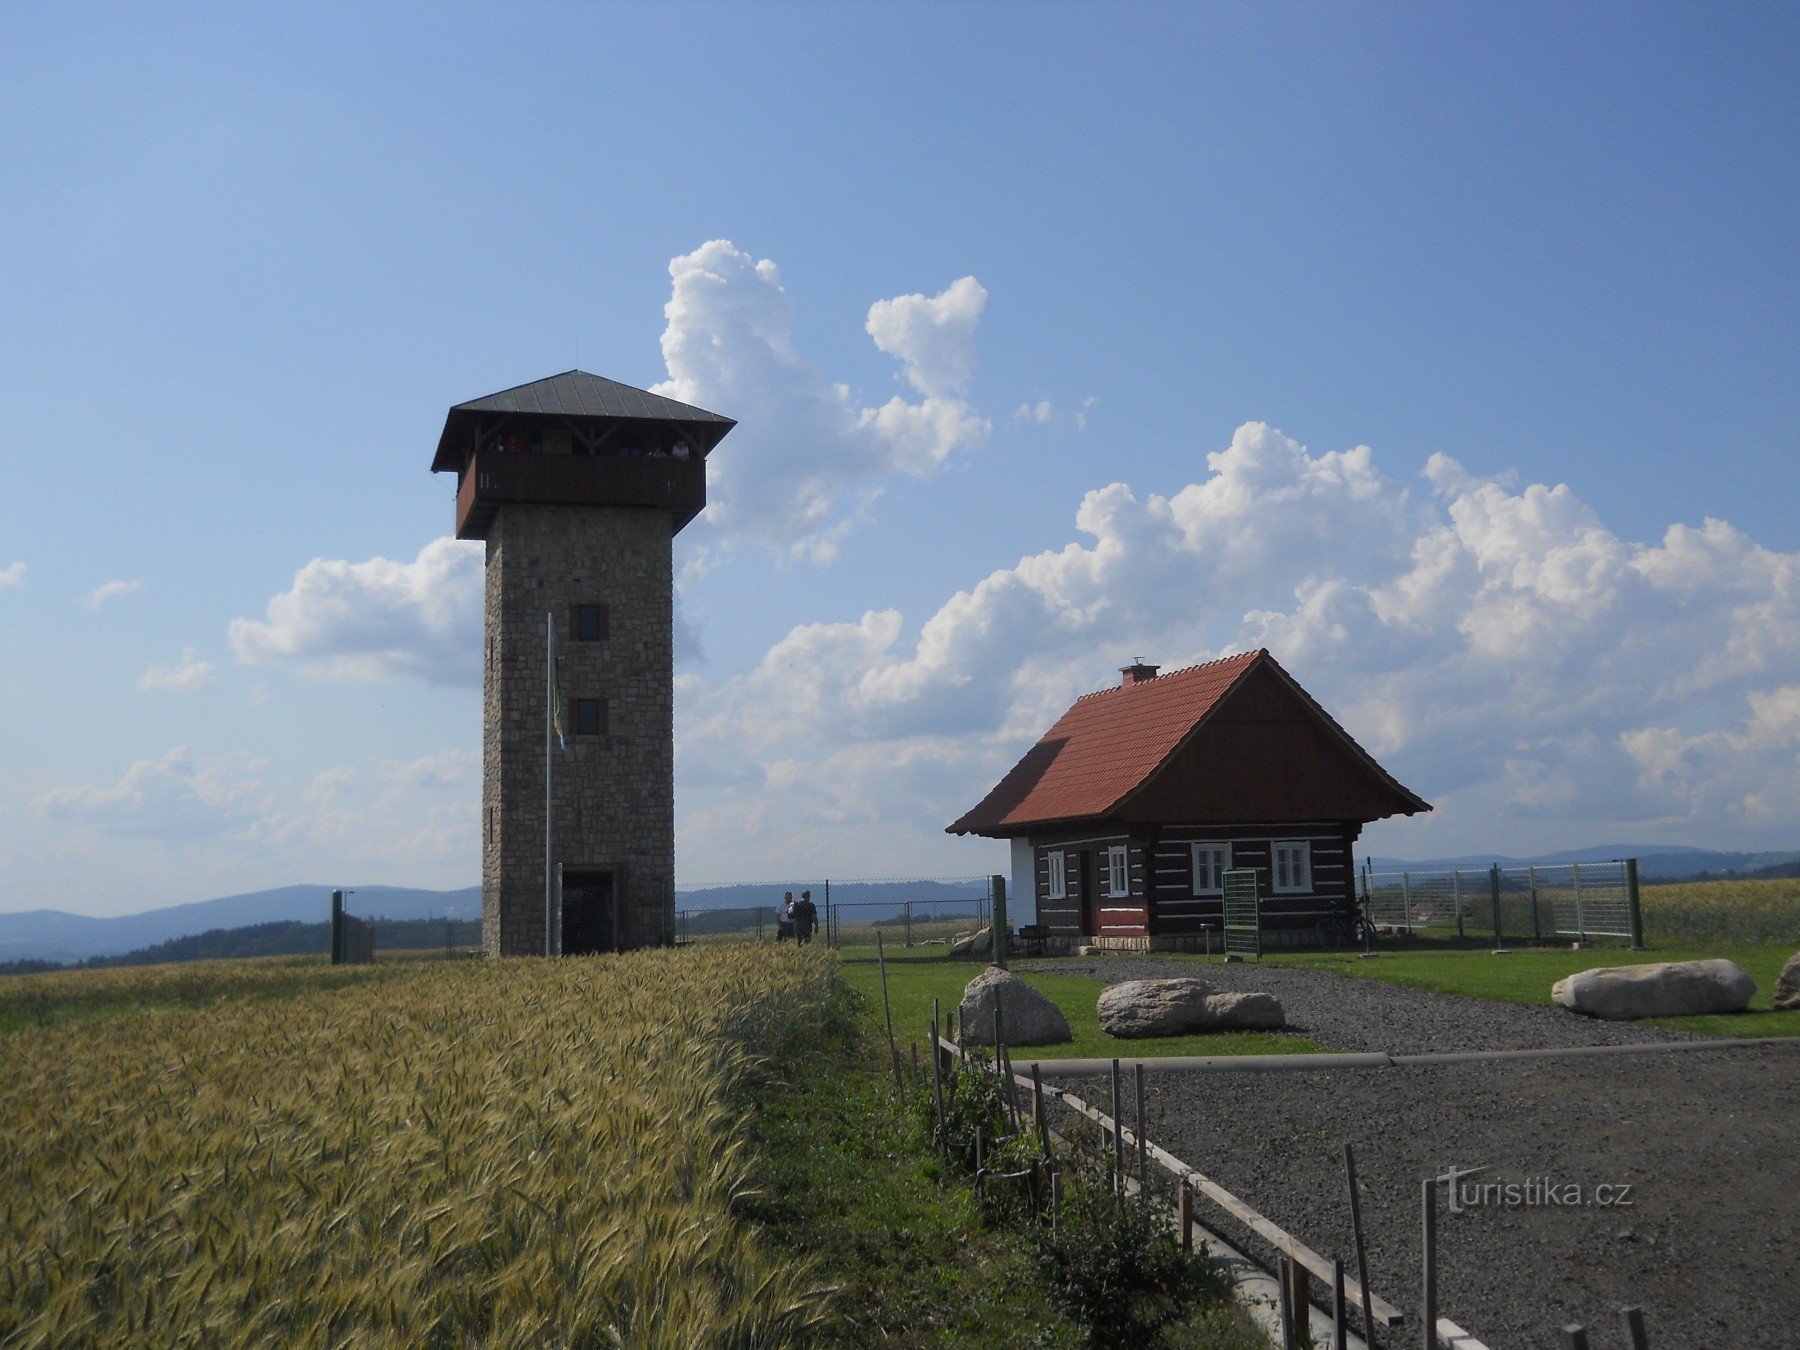 Un sogno d'infanzia che diventa realtà: la torre di avvistamento di U borovice